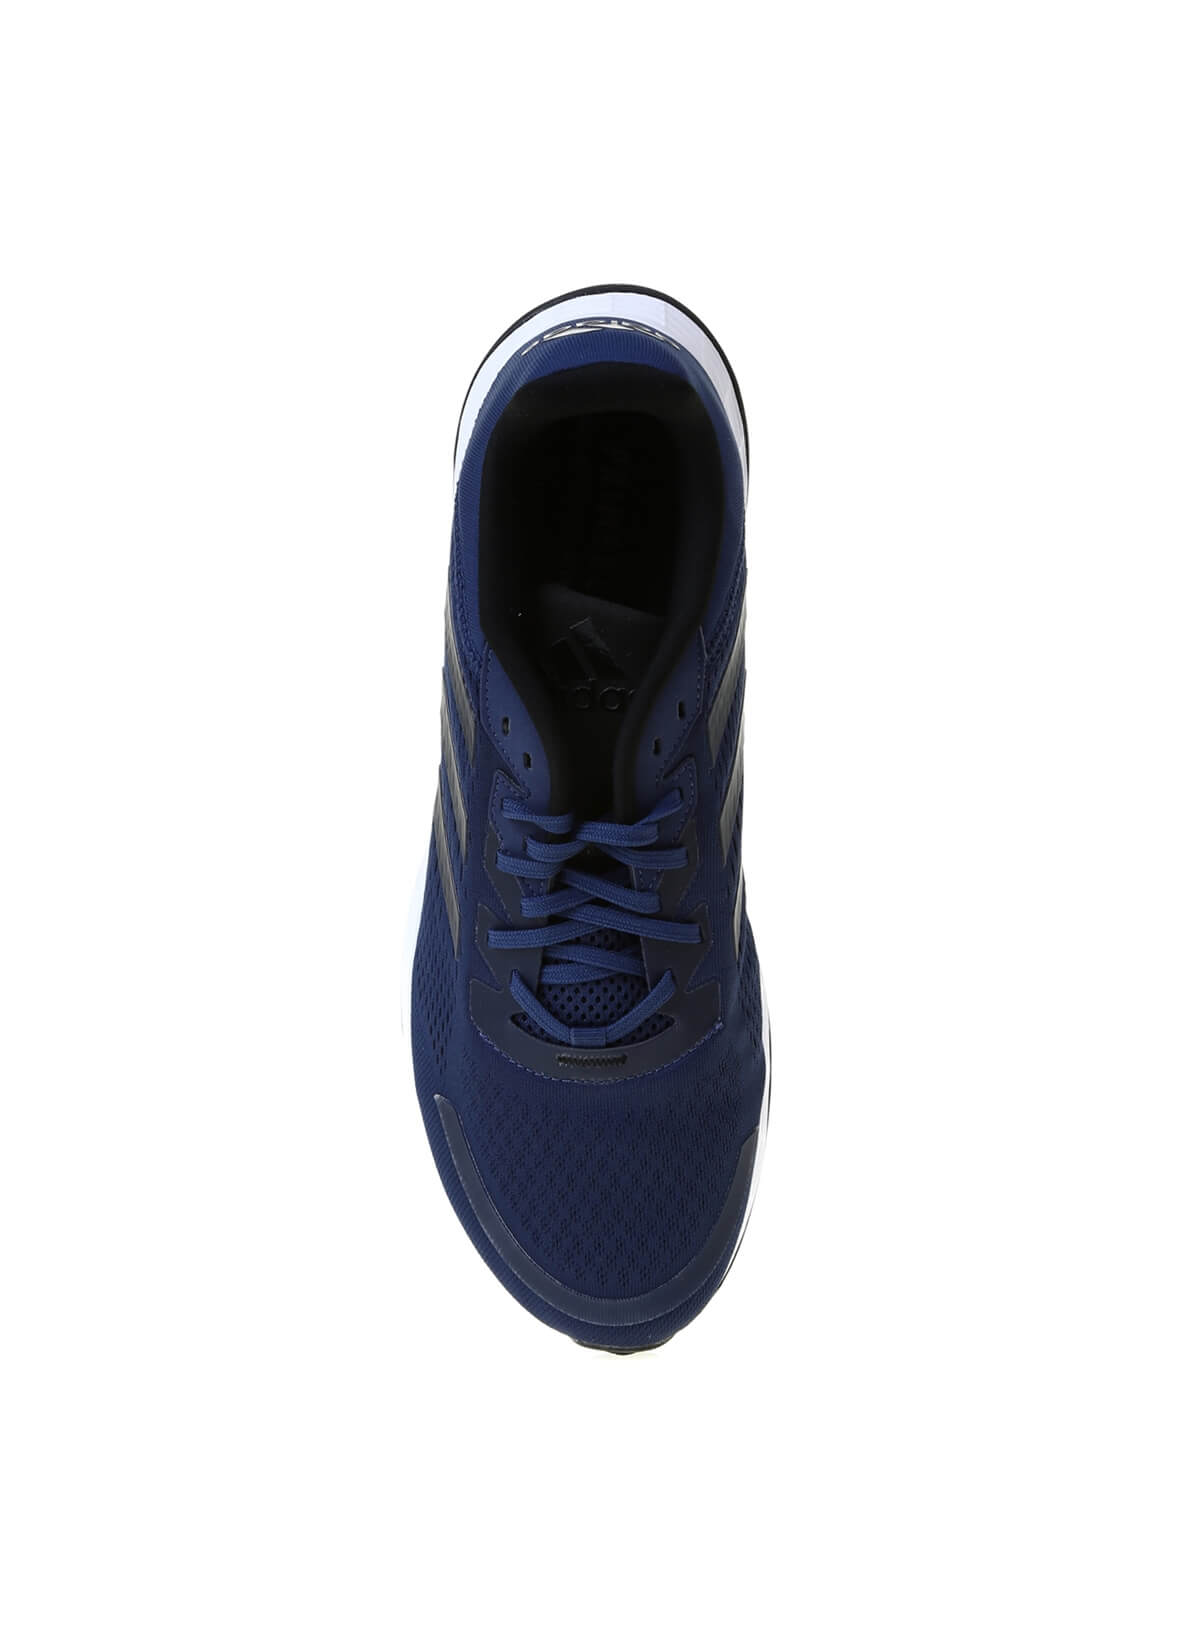 Adidas FW6769 DURAMO SL Erkek Koşu Ayakkabısı